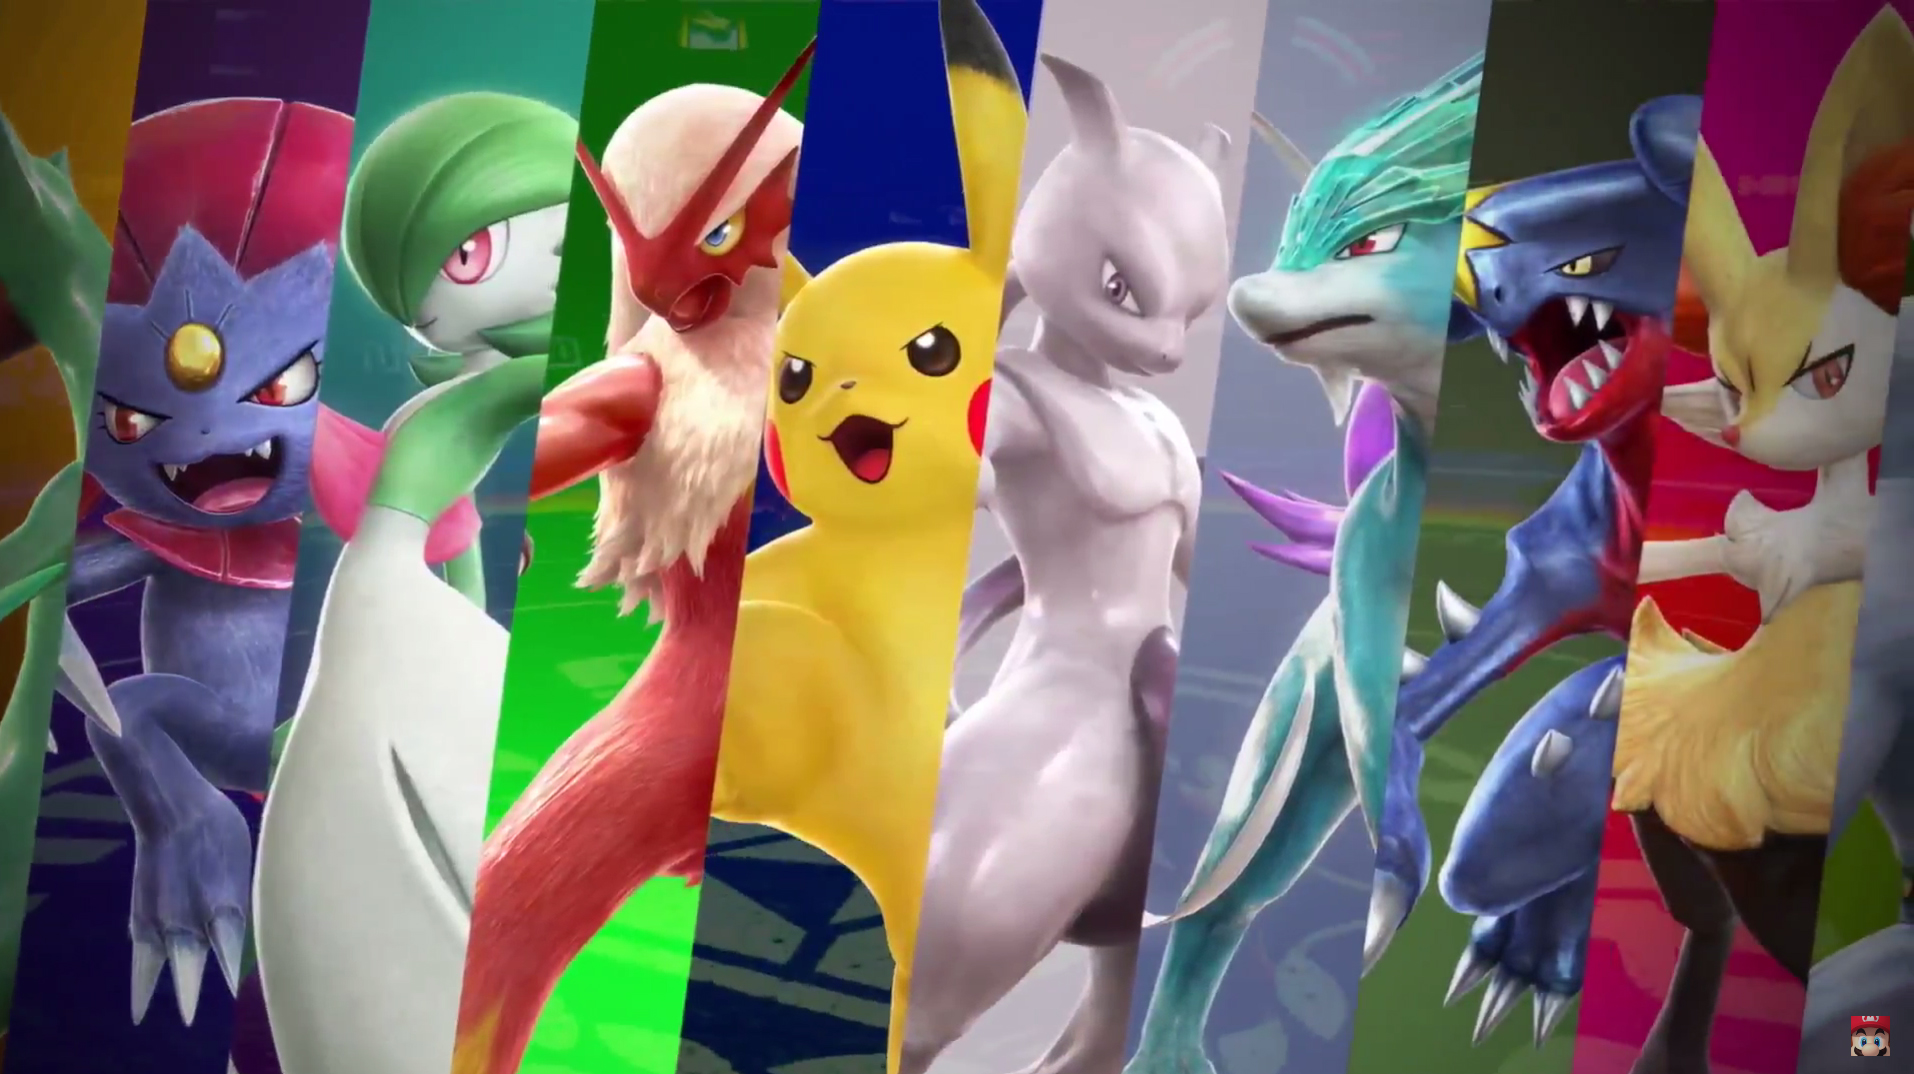 NEW Pokémon Announcement! Pokemon Pokemon Go on